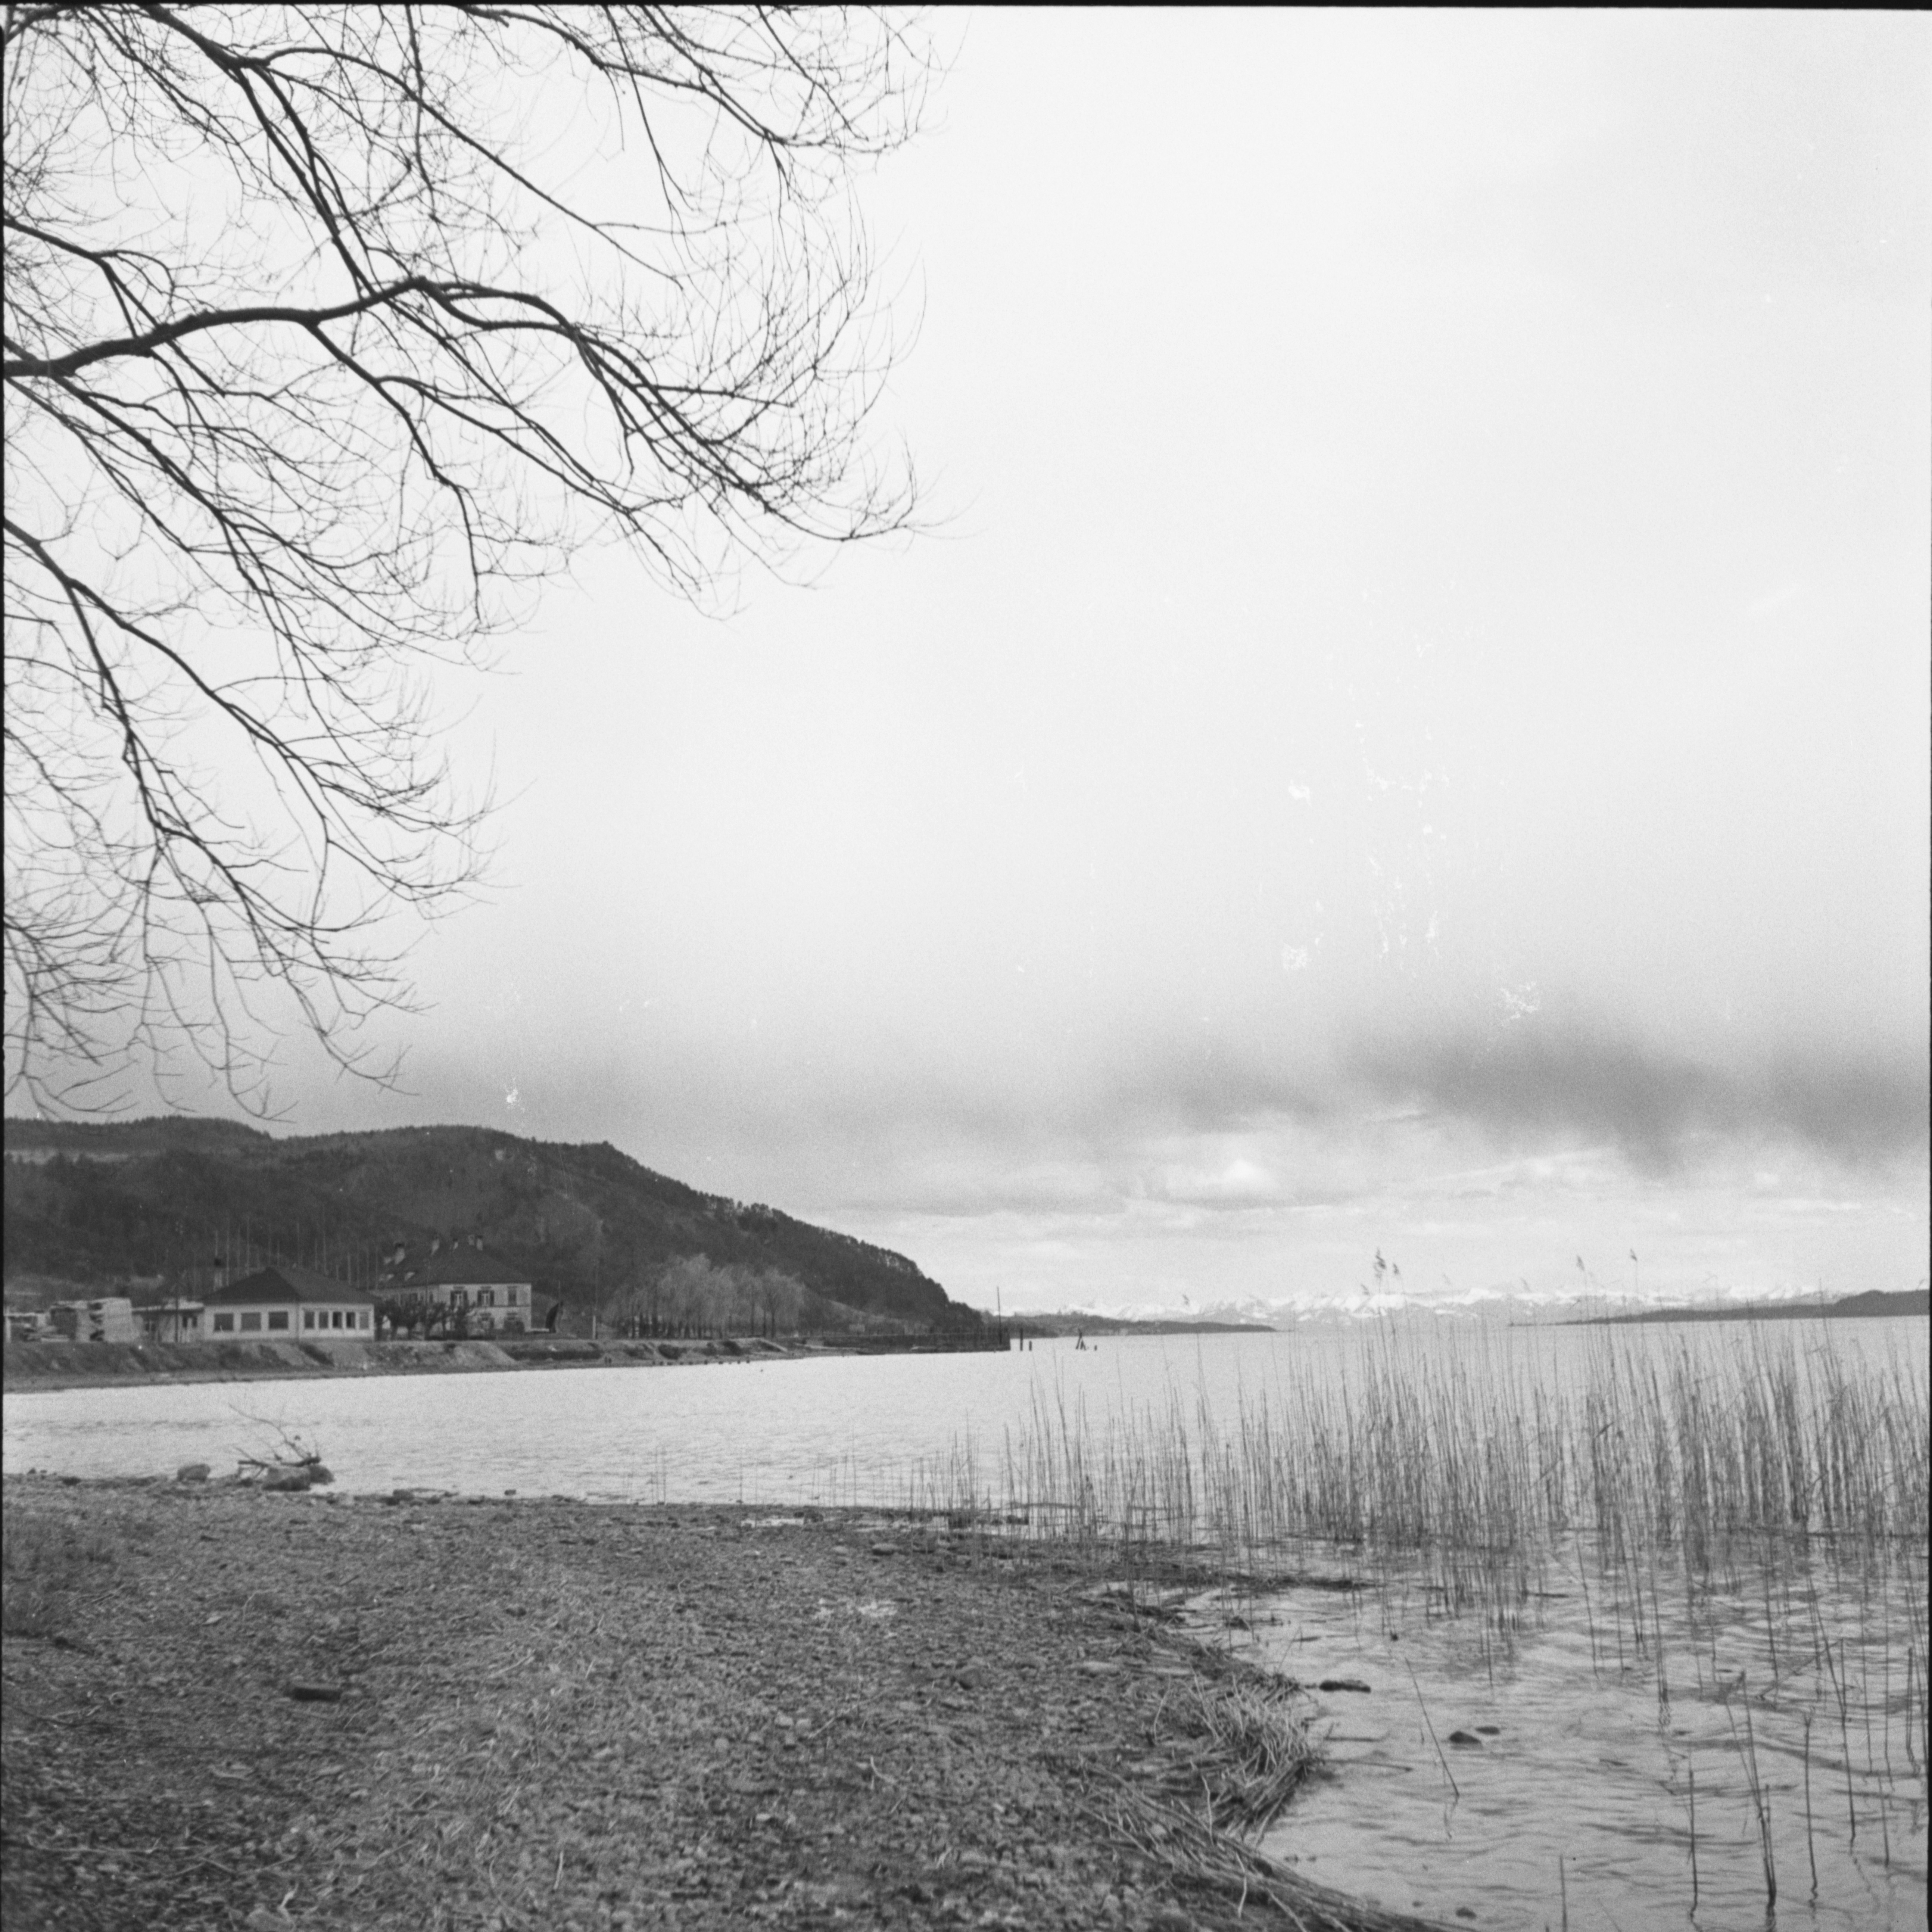  Gustav Hotz, Blick auf den See von Ludwigshafen, Stadtarchiv Stockach, Bildarchiv Foto Hotz, KBG_0964q 